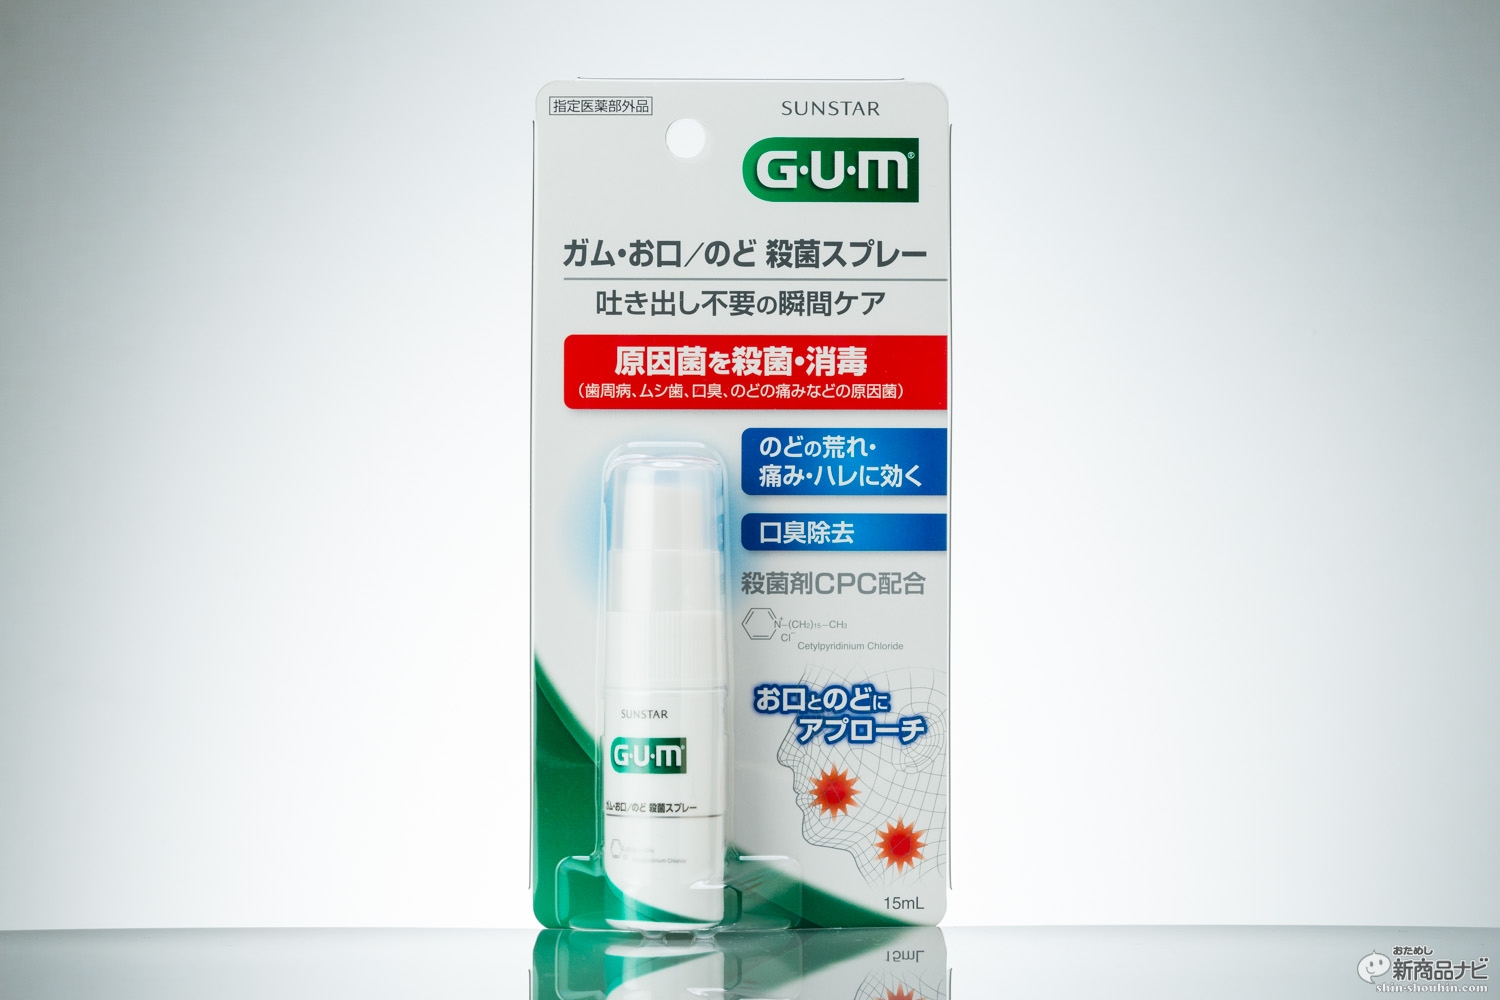 殺菌力に定評がある歯周病予防ブランド”G・U・M”から『ガム・お口/のど 殺菌スプレー』。お口の原因菌の殺菌・消毒に加え、気になる口臭やノドの